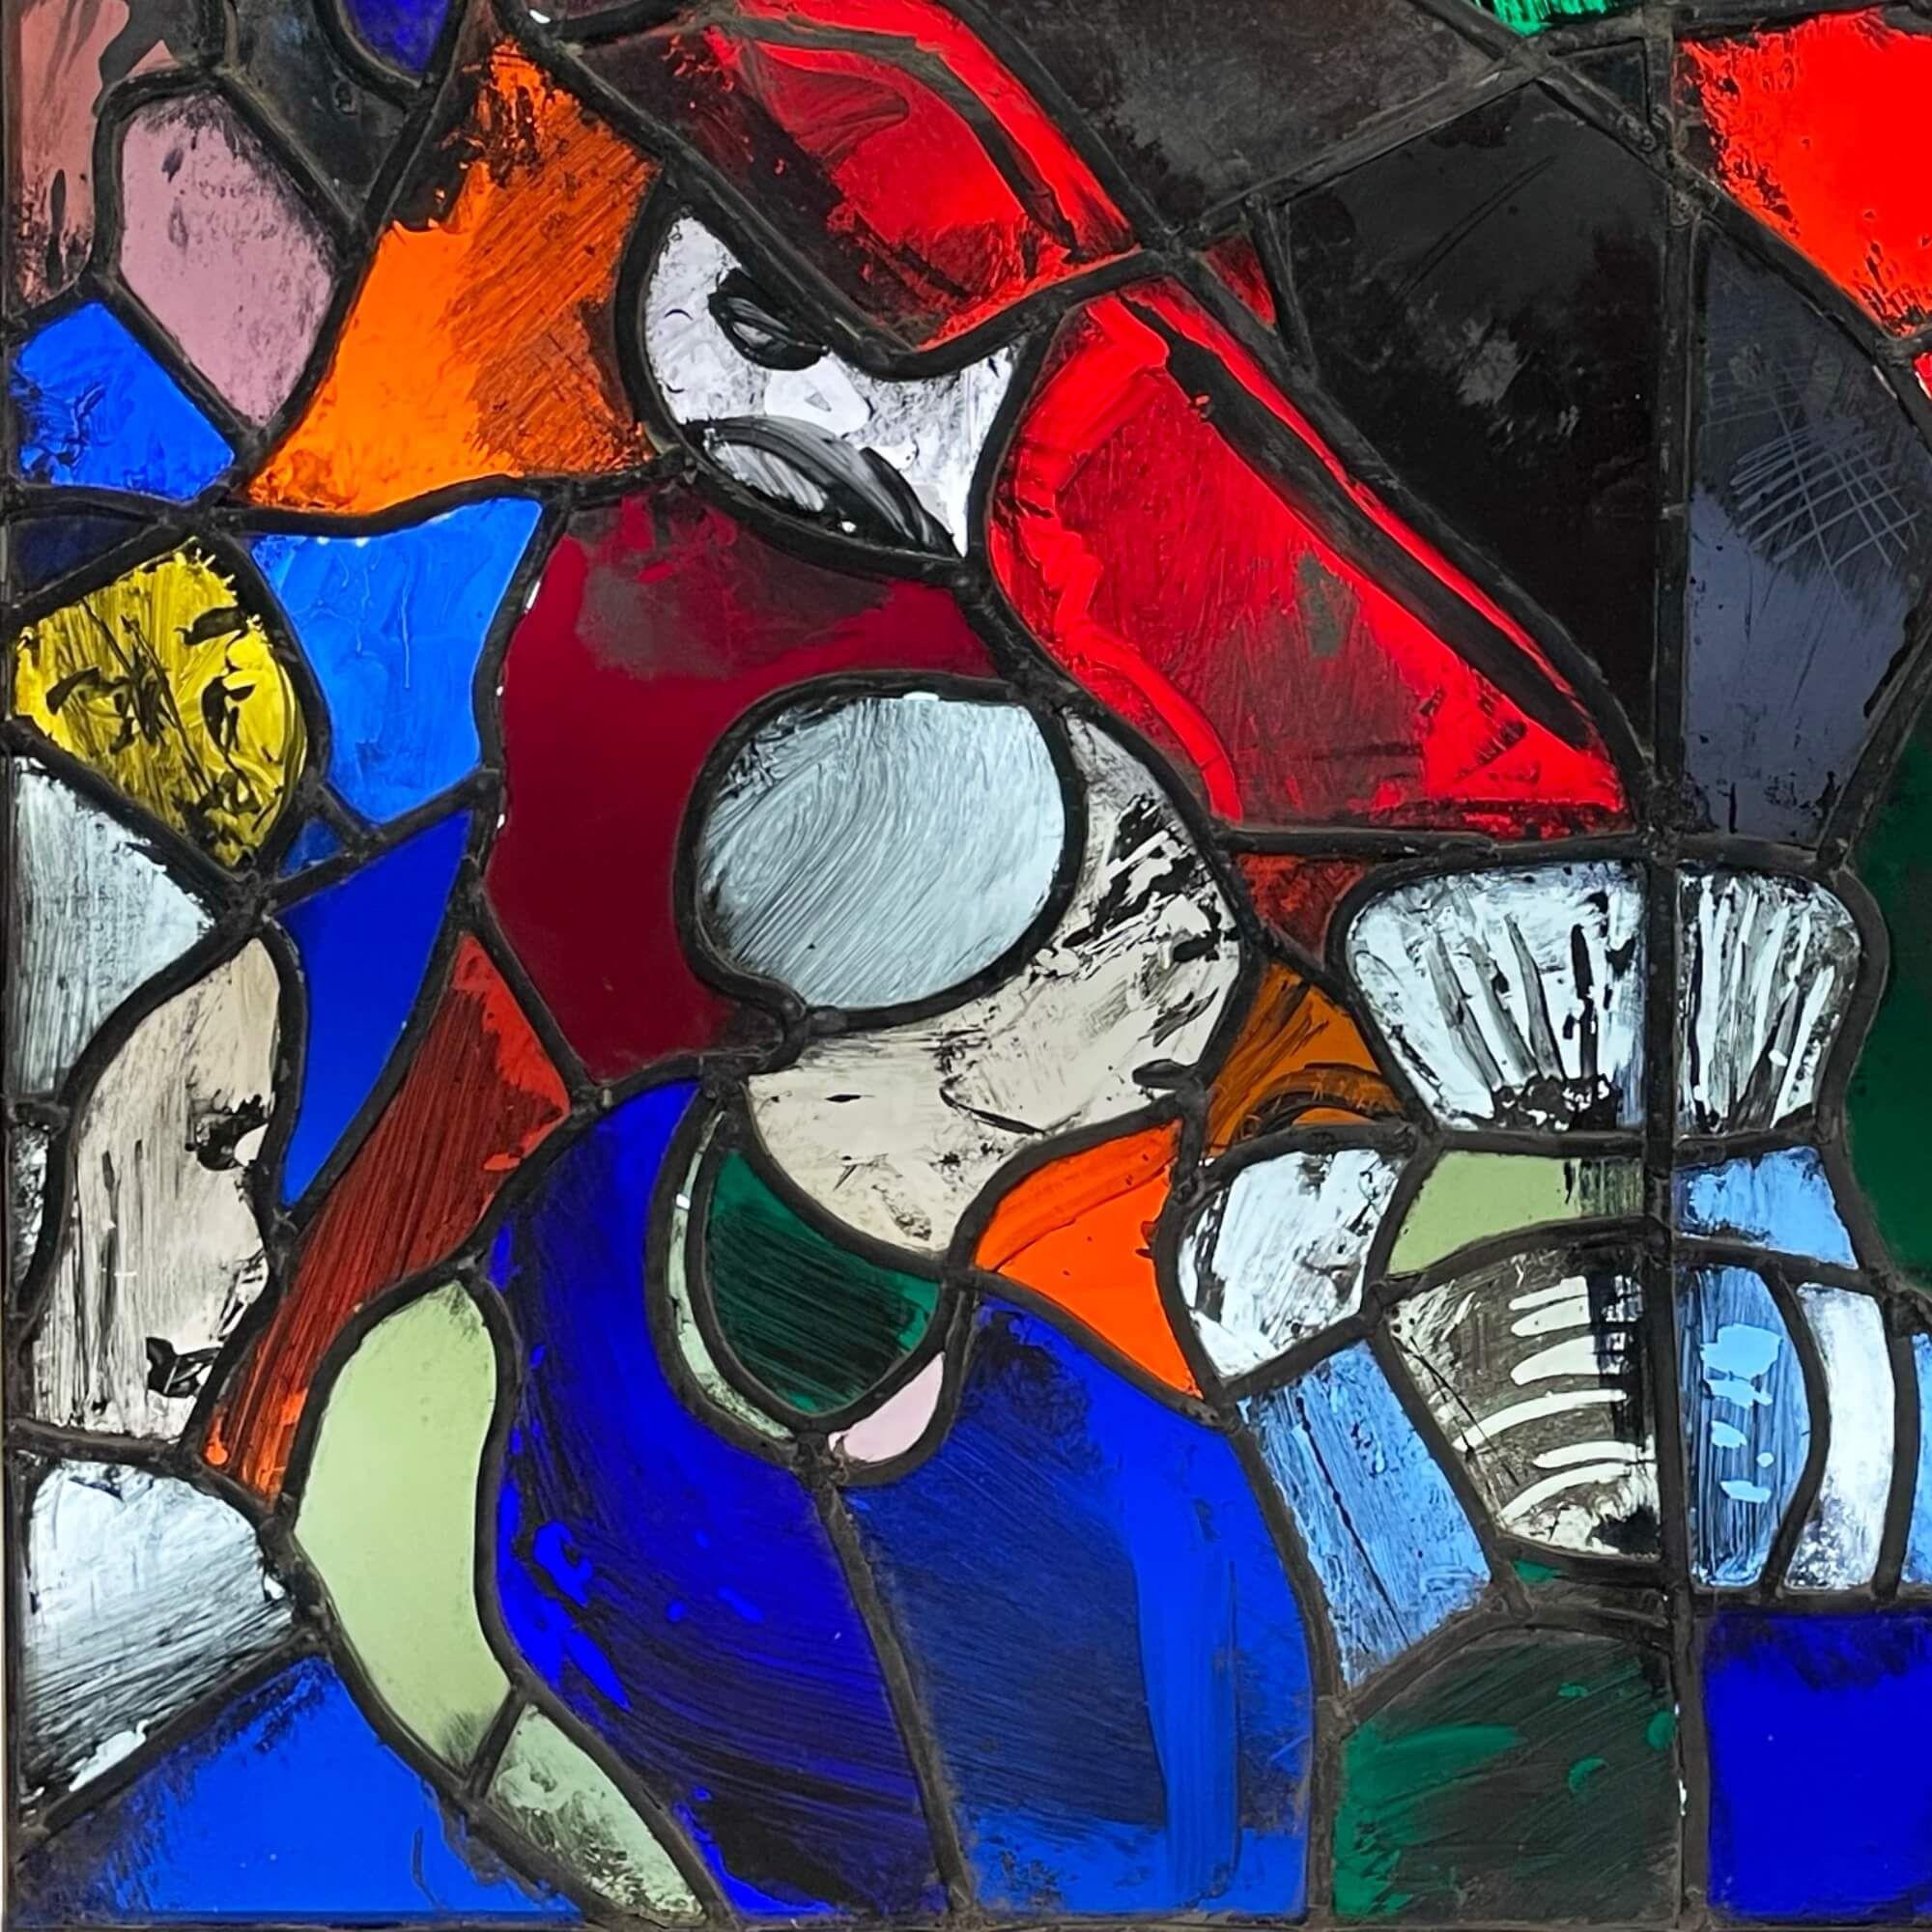 Ein abstraktes Glasfenster aus dem Studio von Patrick Reyntiens (1925-2021). Diese dem Künstler zugeschriebene Glasmalerei zeigt ein farbenfrohes Design mit abstrakten handgemalten Details und unregelmäßigen Formen. Es handelt sich um eine von